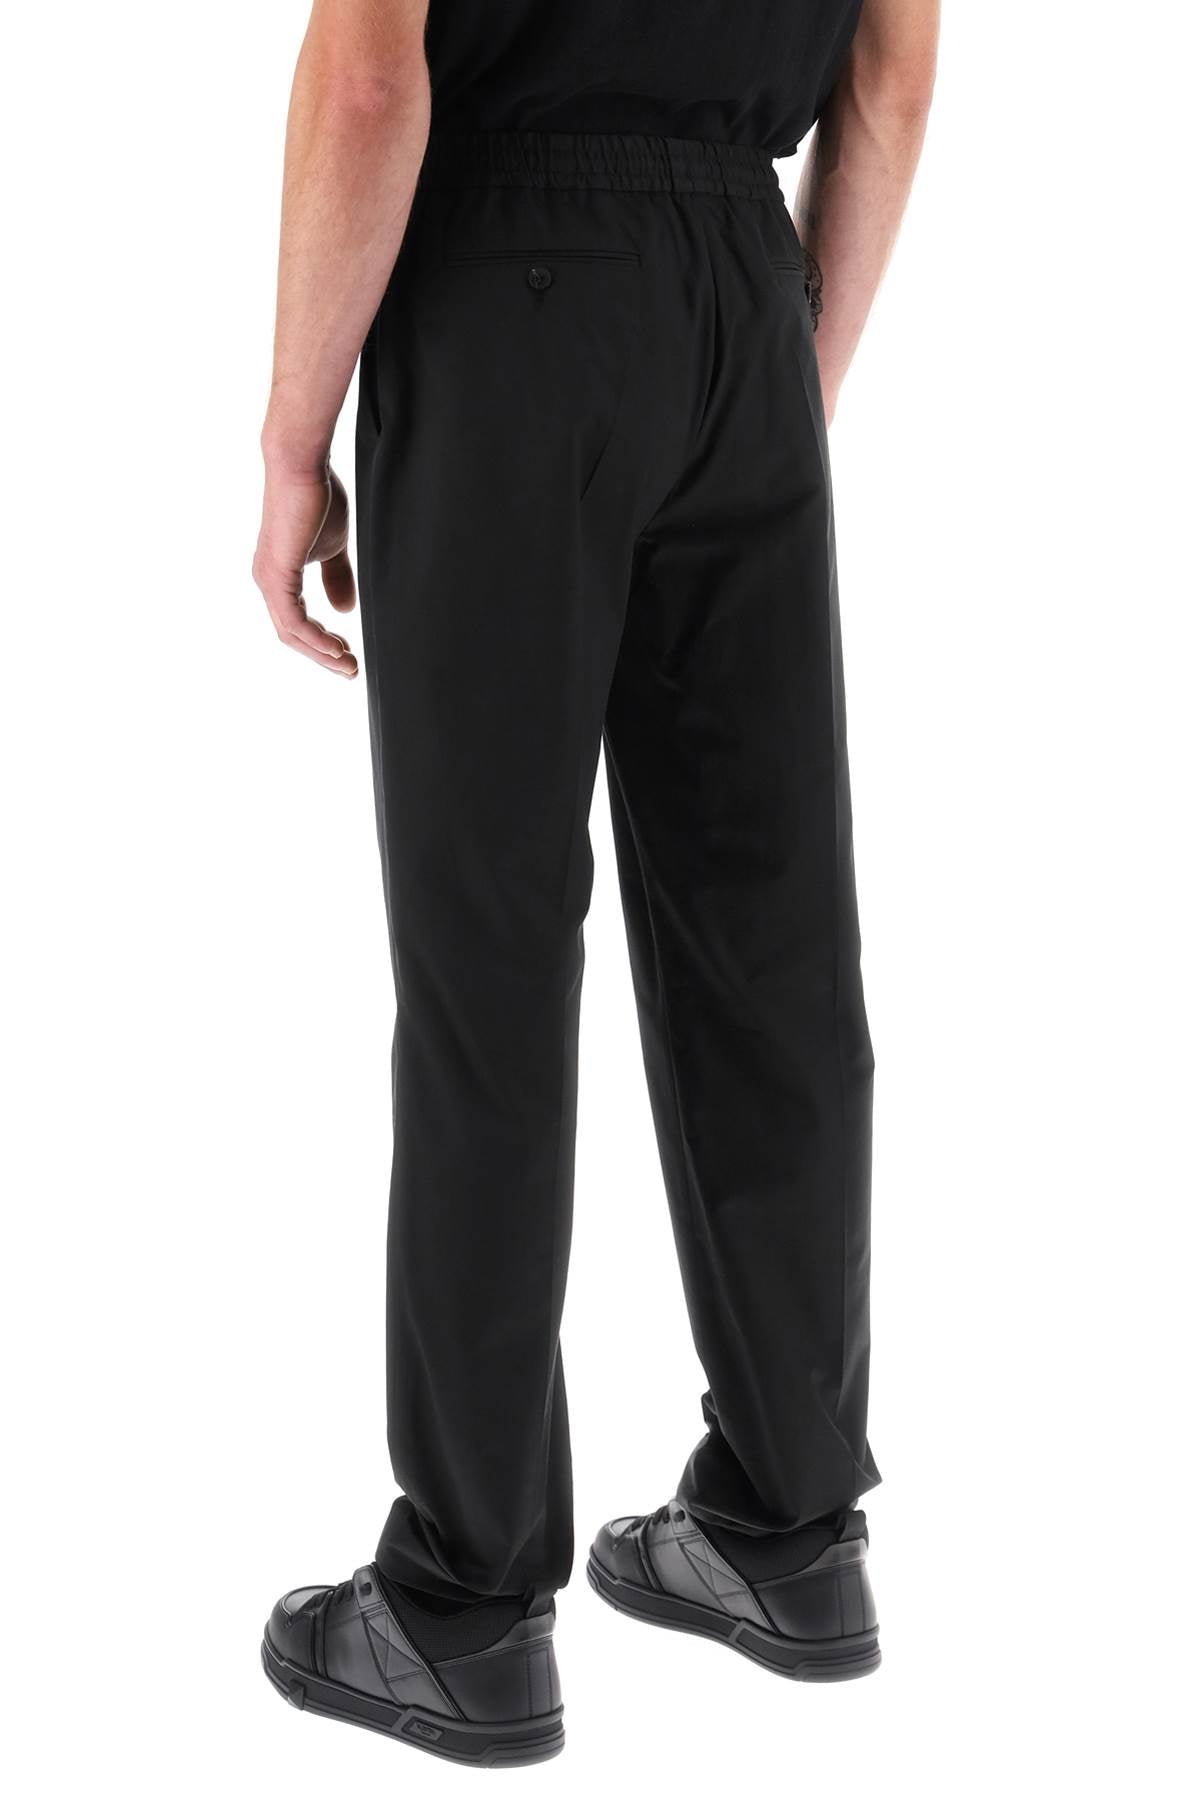 黑色弹力腰服装休闲男士修身黑色平板棉弹沙发一步运动裤（不含品牌名称，避免使用外文）